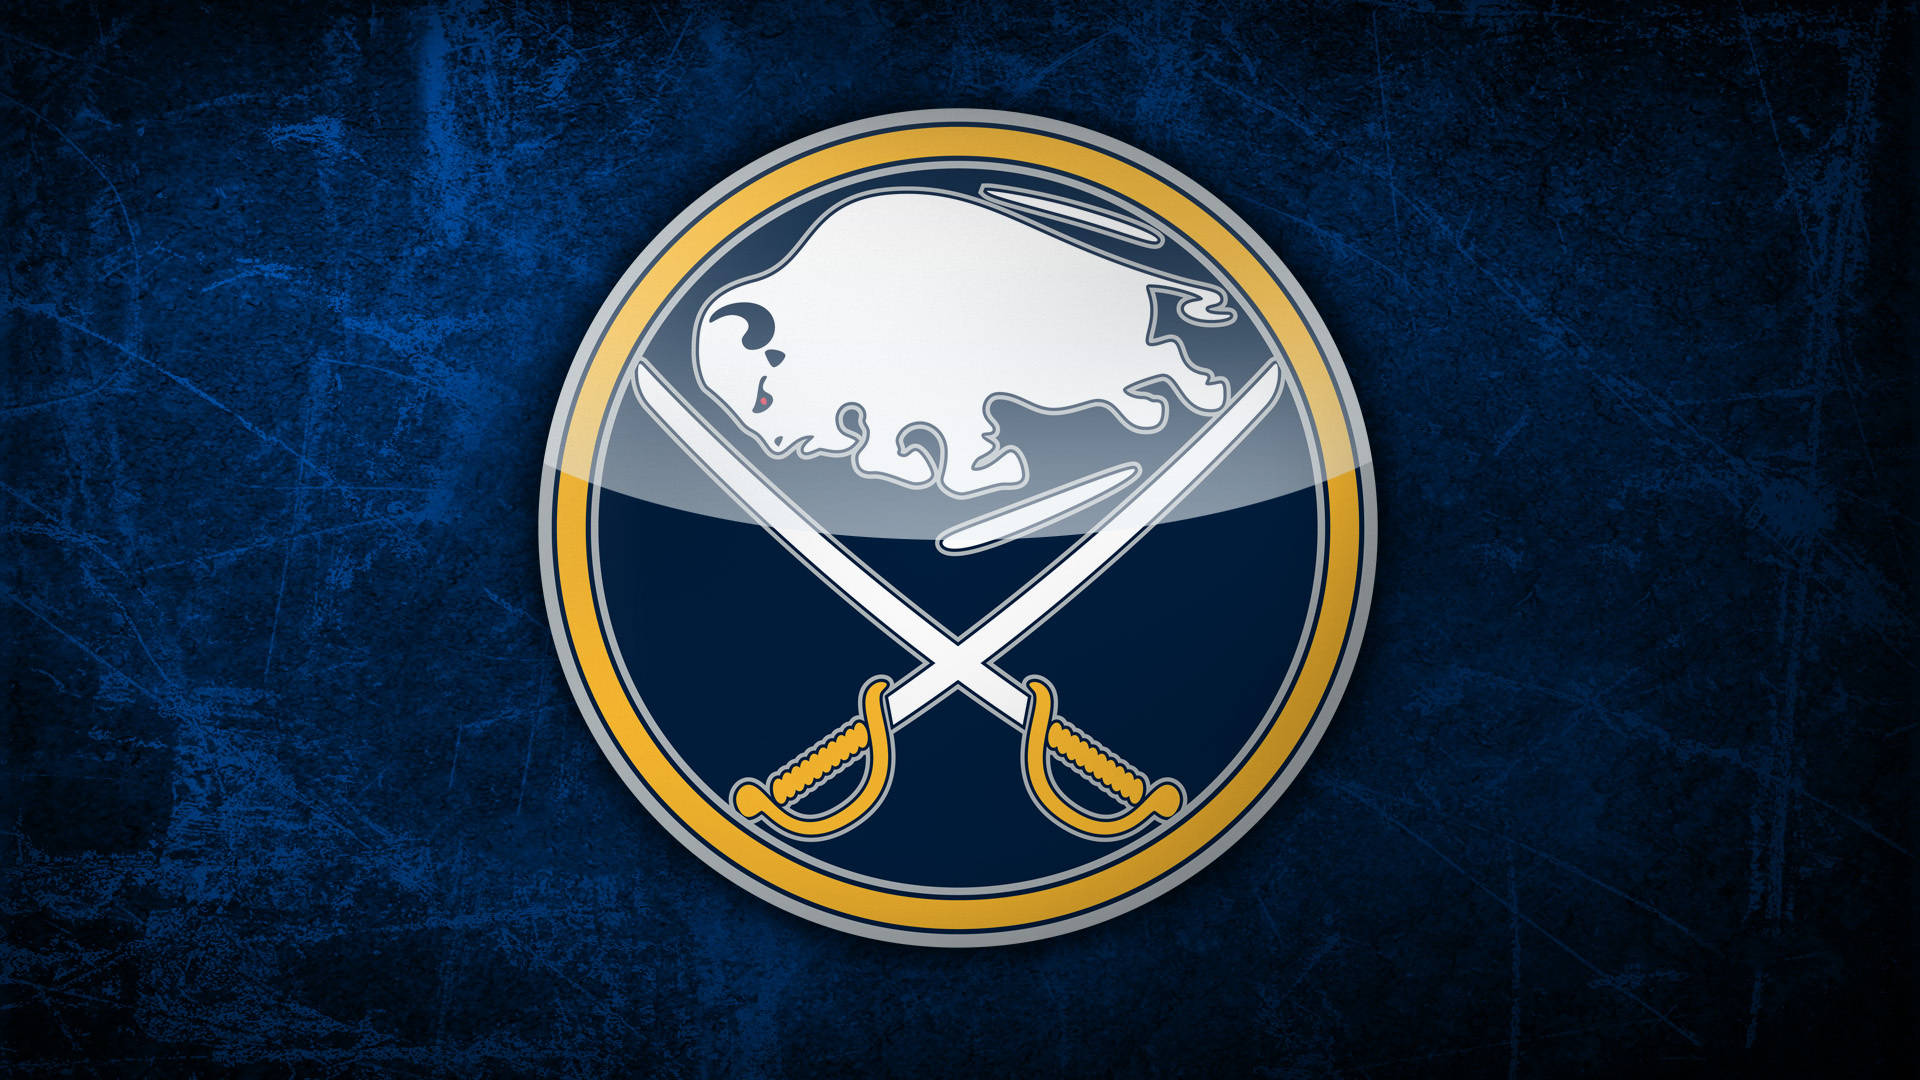 Buffalo Sabres' Emblem On Dark Blue Background